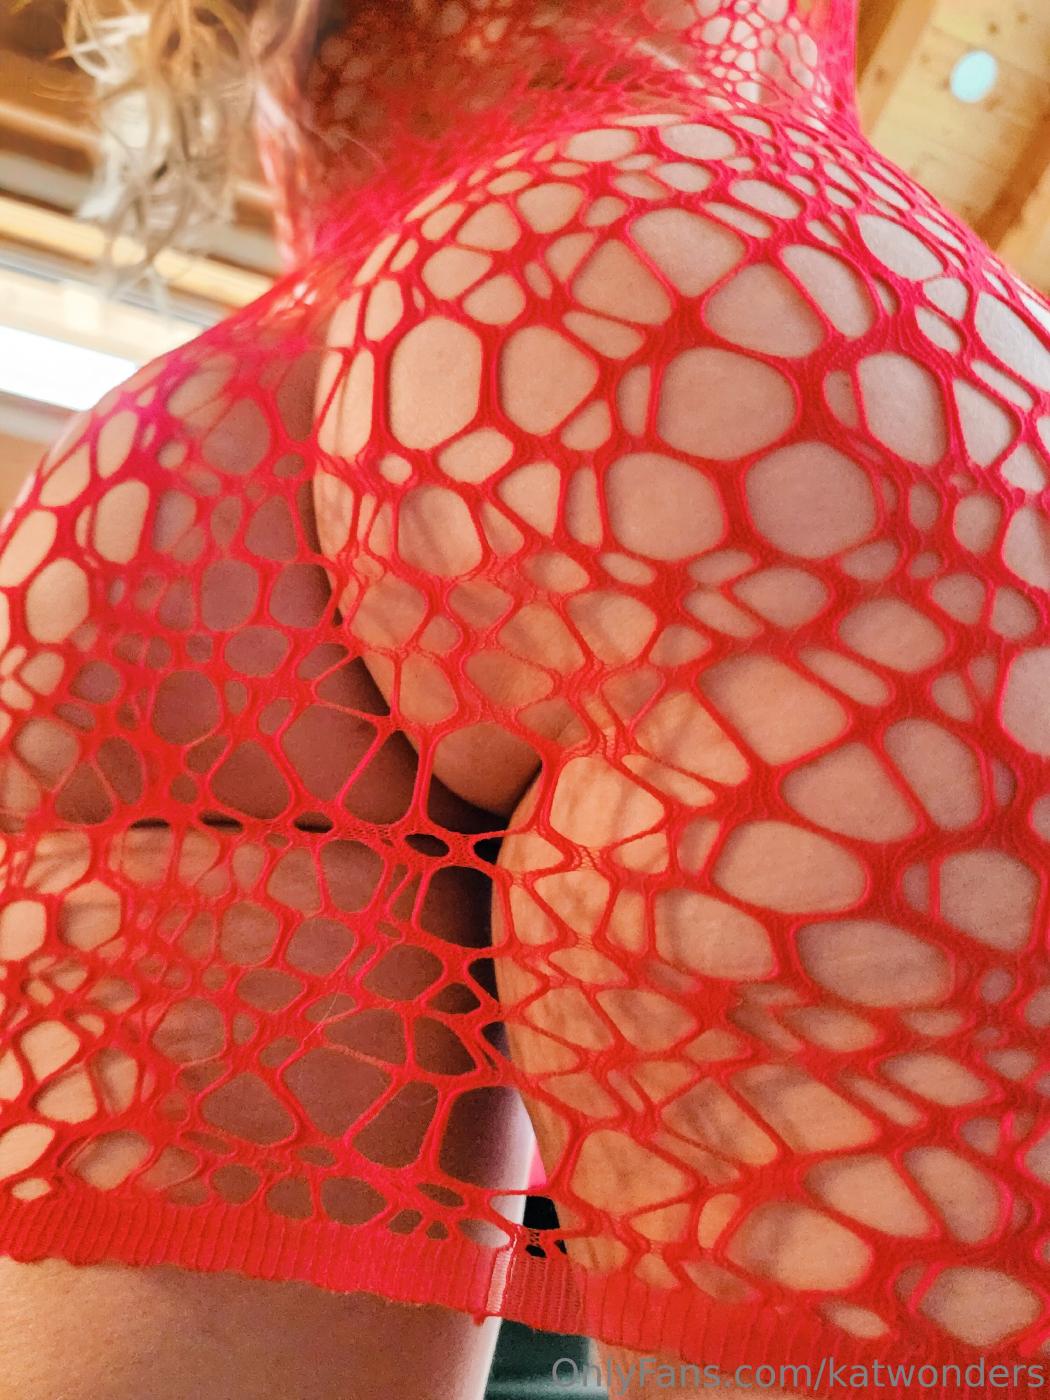 Kat Wonders Nude Red Fishnet Bodysuit Onlyfans Set Leaked - Influencers  GoneWild